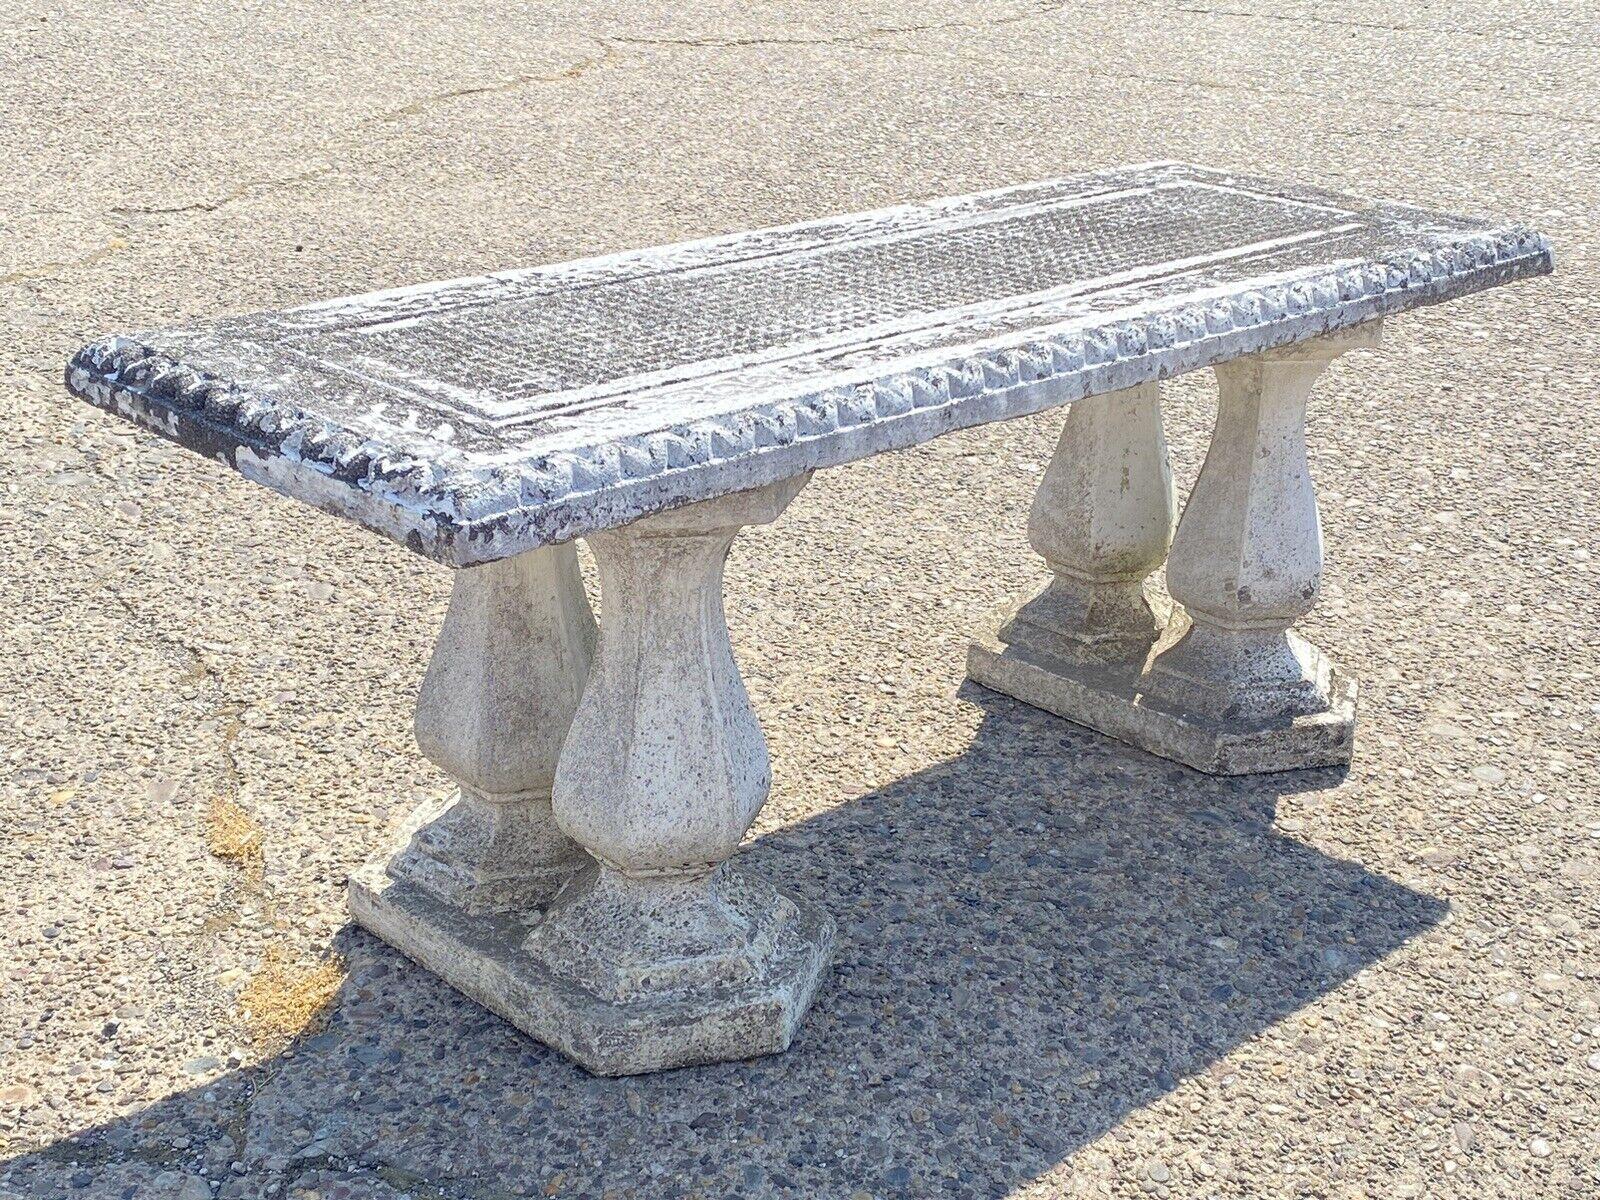 Vintage Classical Concrete Cement Double Baluster Outdoor Garden Bench Pedestals. Merkmale des Artikels  2 Beton-Doppelbalustersockel für eine Gartenbank. Der Sitz ist nicht enthalten. Ein Beispiel für eine fertige Bank ist in Bild 2 zu sehen. Circa